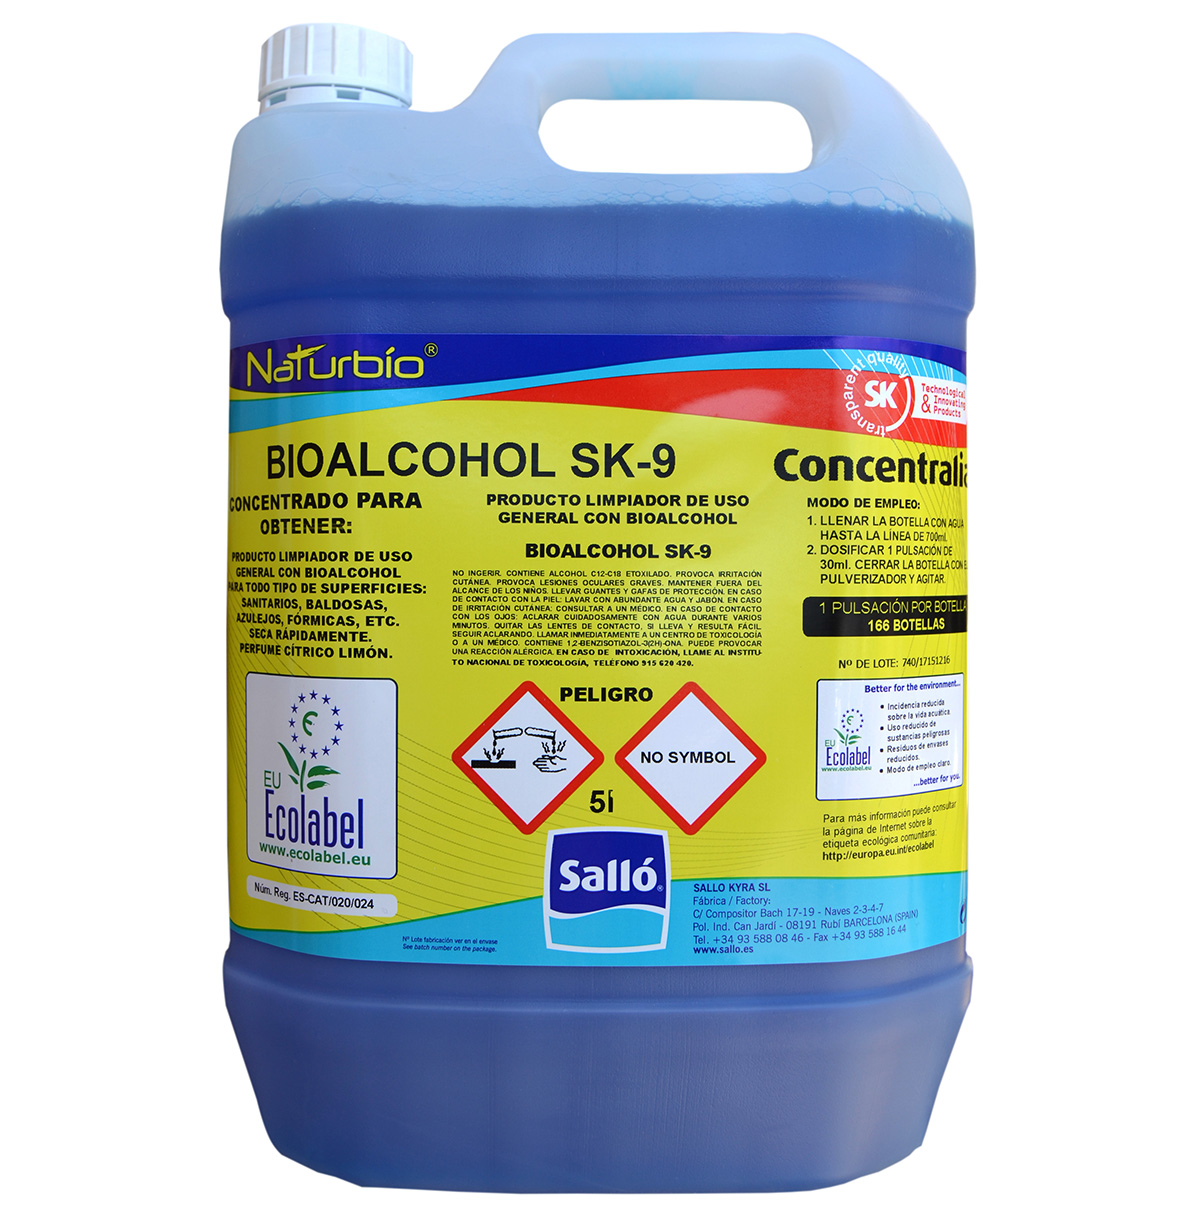 Bioalcohol concentrado Naturbio SK9 425ML